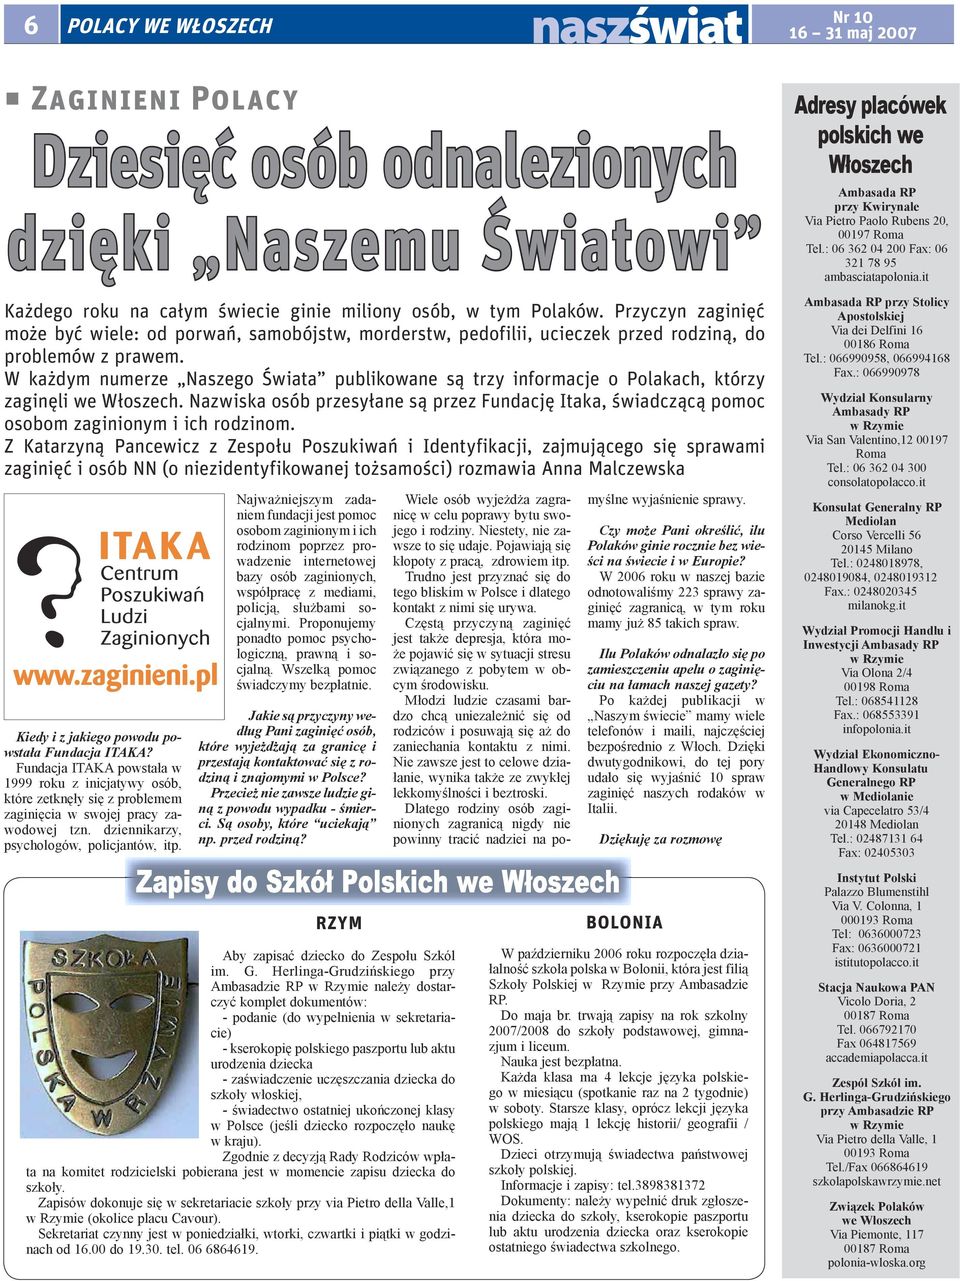 W każdym numerze Naszego Świata publikowane są trzy informacje o Polakach, którzy zaginęli we Włoszech.